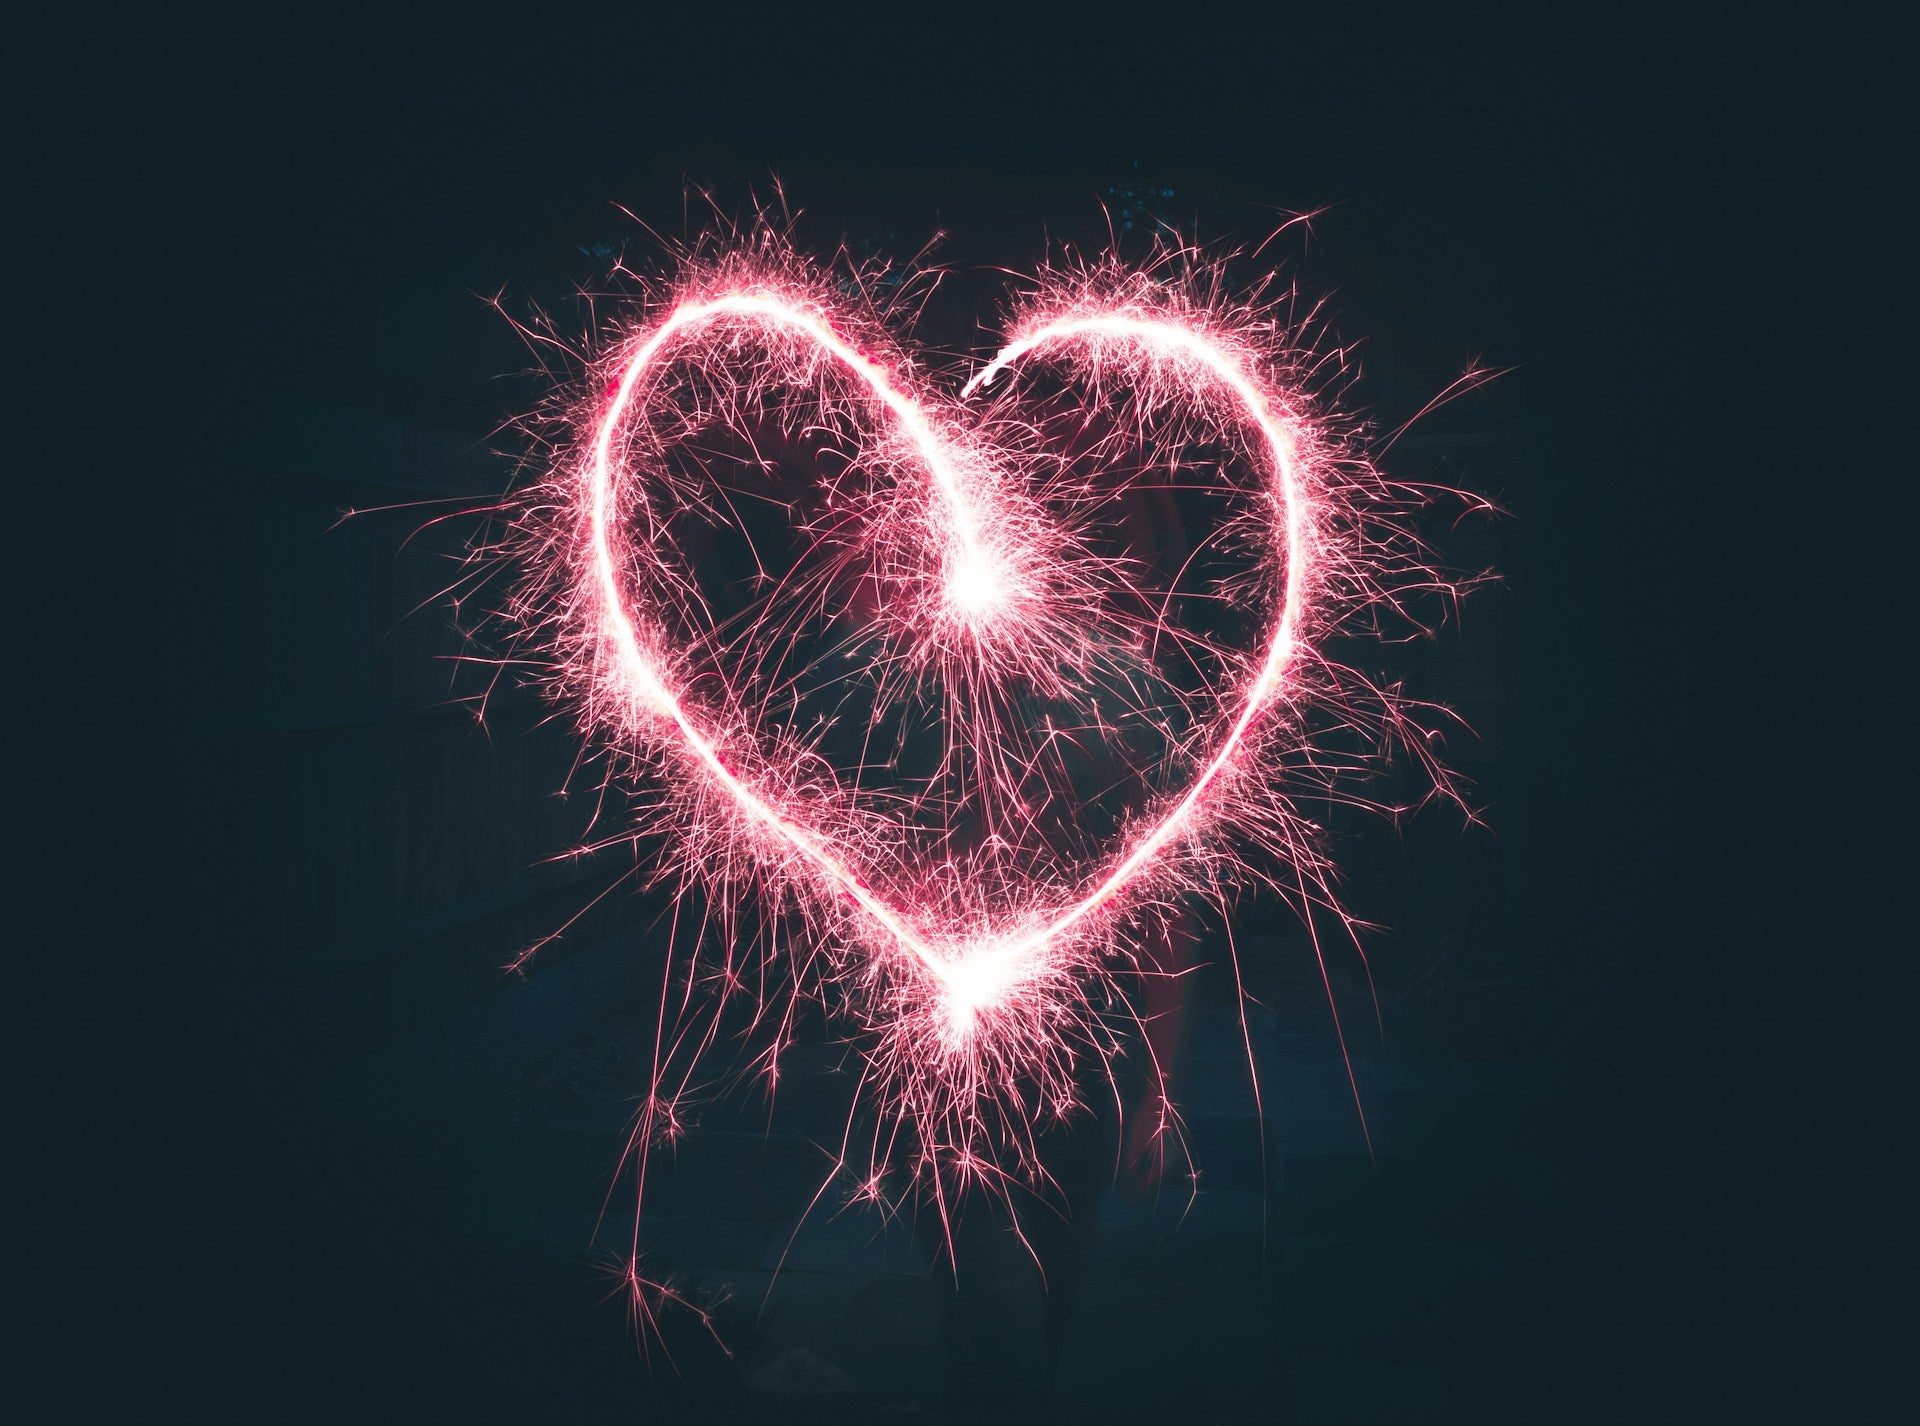 A pink heart made of sparkler sparks.